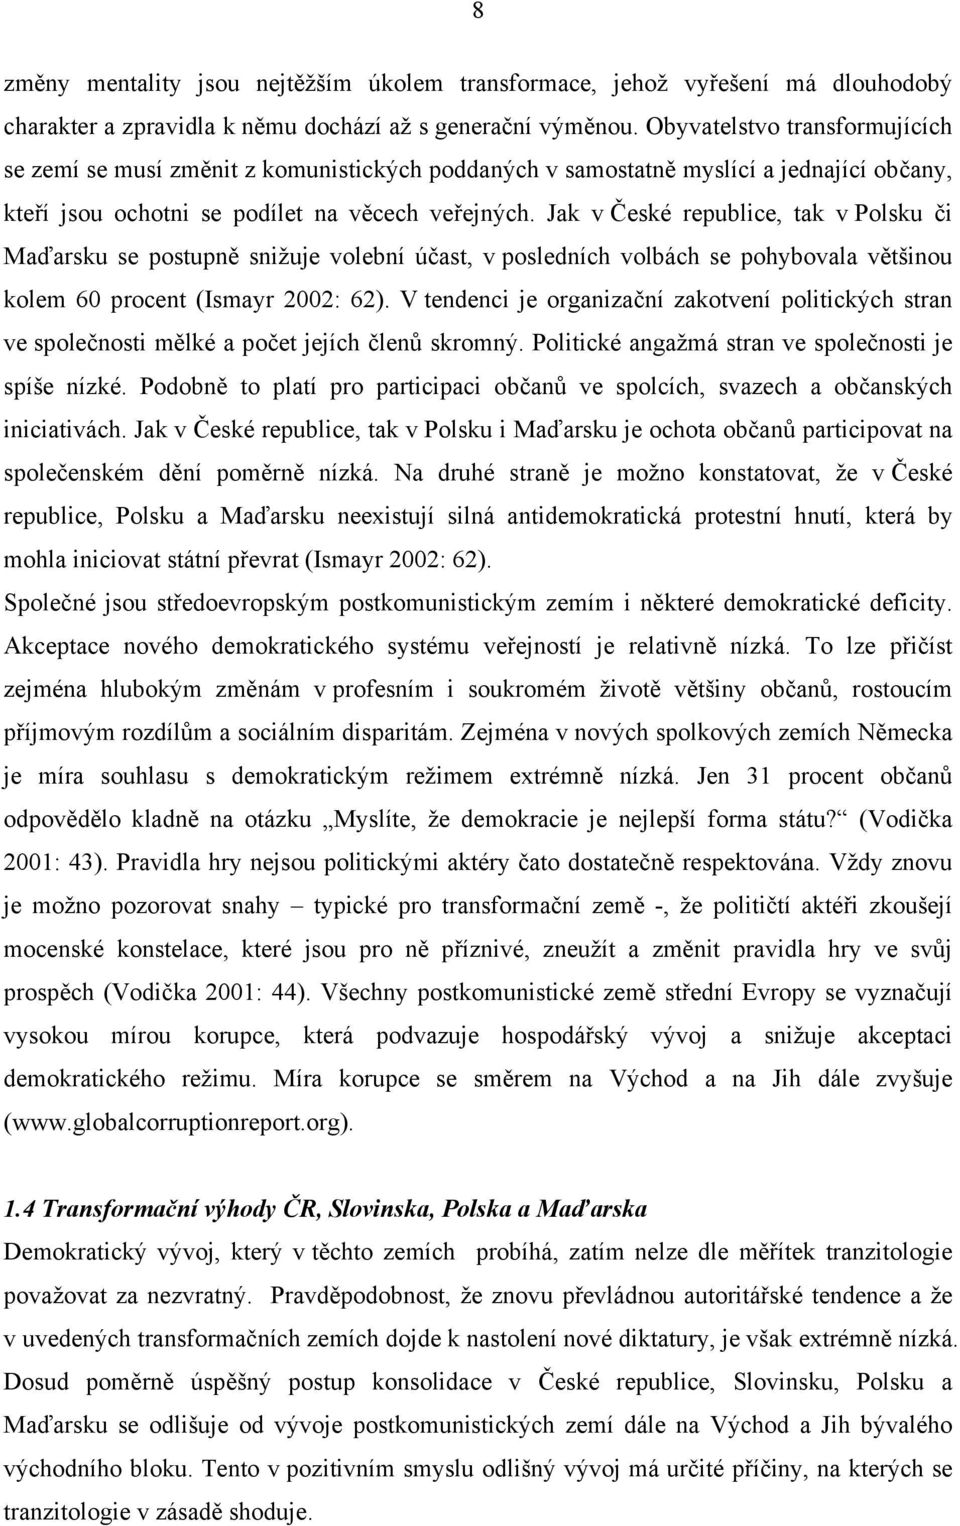 Jak v České republice, tak v Polsku či Maďarsku se postupně snižuje volební účast, v posledních volbách se pohybovala většinou kolem 60 procent (Ismayr 2002: 62).